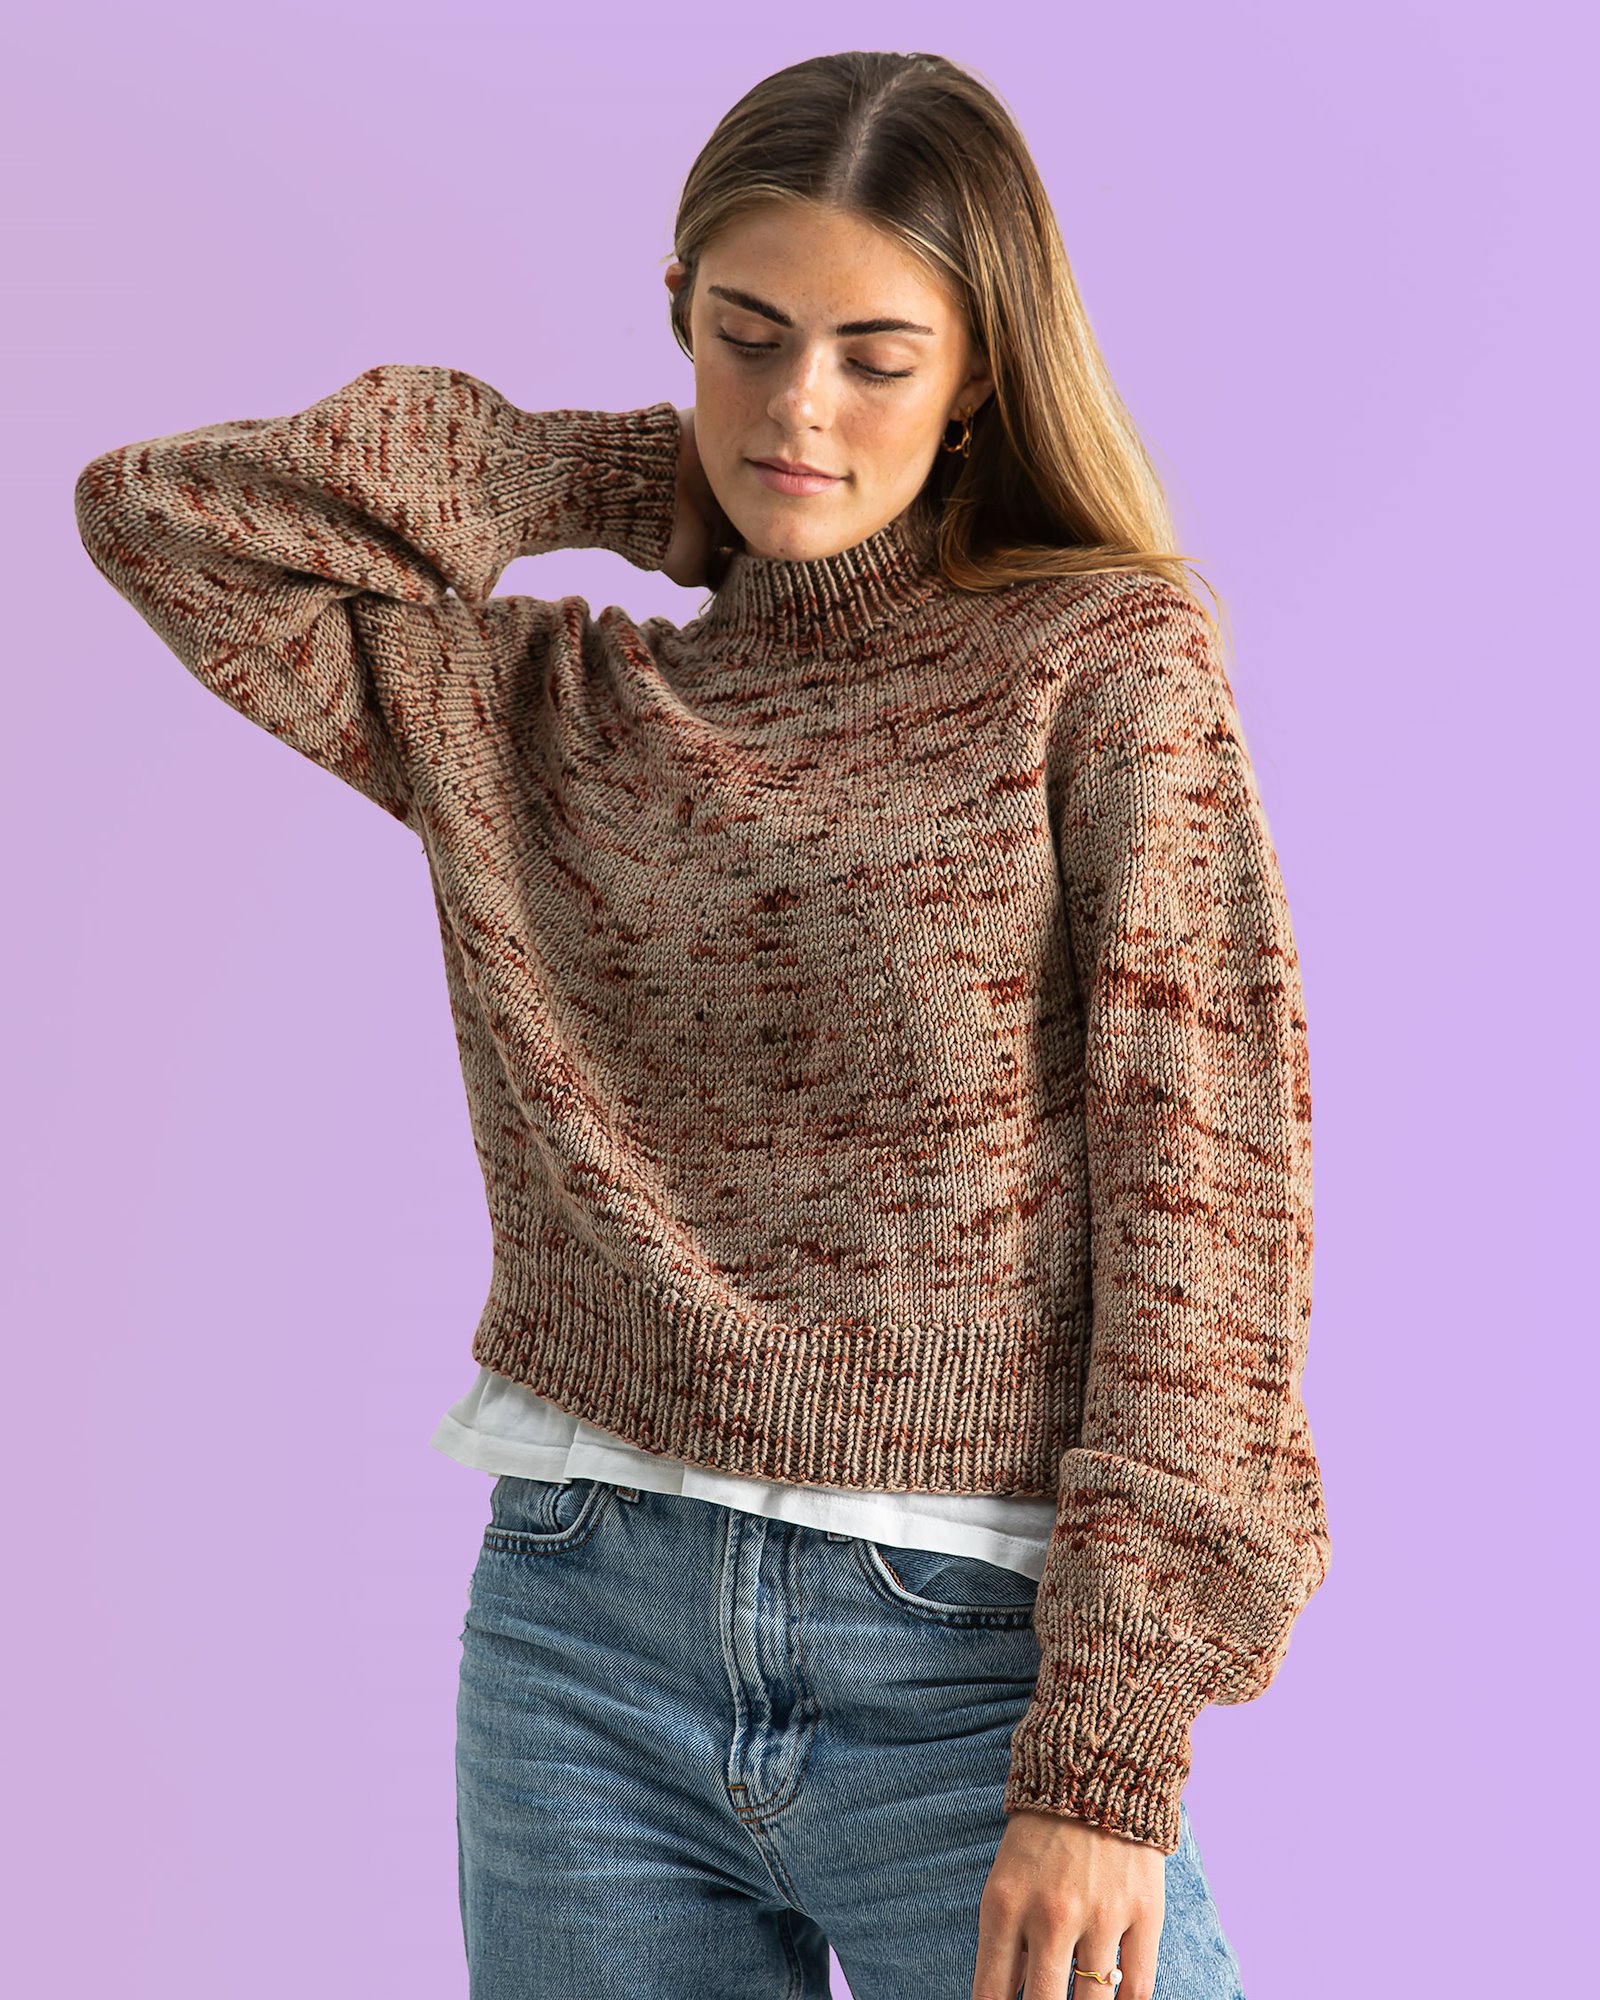 FRAYA strikkeoppskrift - Something Simple Sweater, dame - Splashing version FRAYA2048_image.jpg